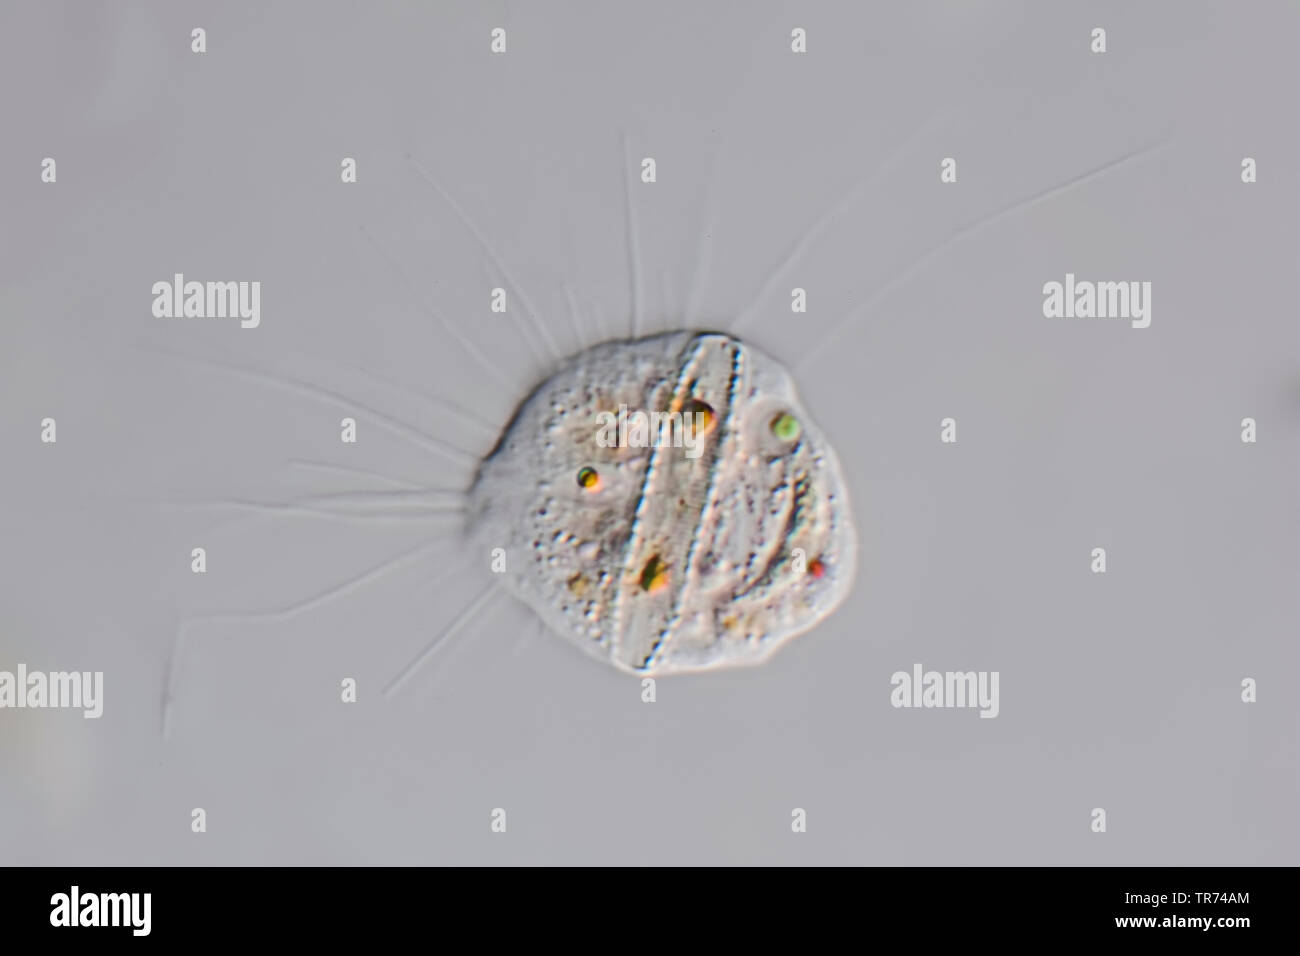 Amebas, Amöben (Amoebozoa), Wohnzimmer amöbe von Tessin, Differential Interferenz Kontrast Mikroskopie, x160, Schweiz, Tessin Stockfoto